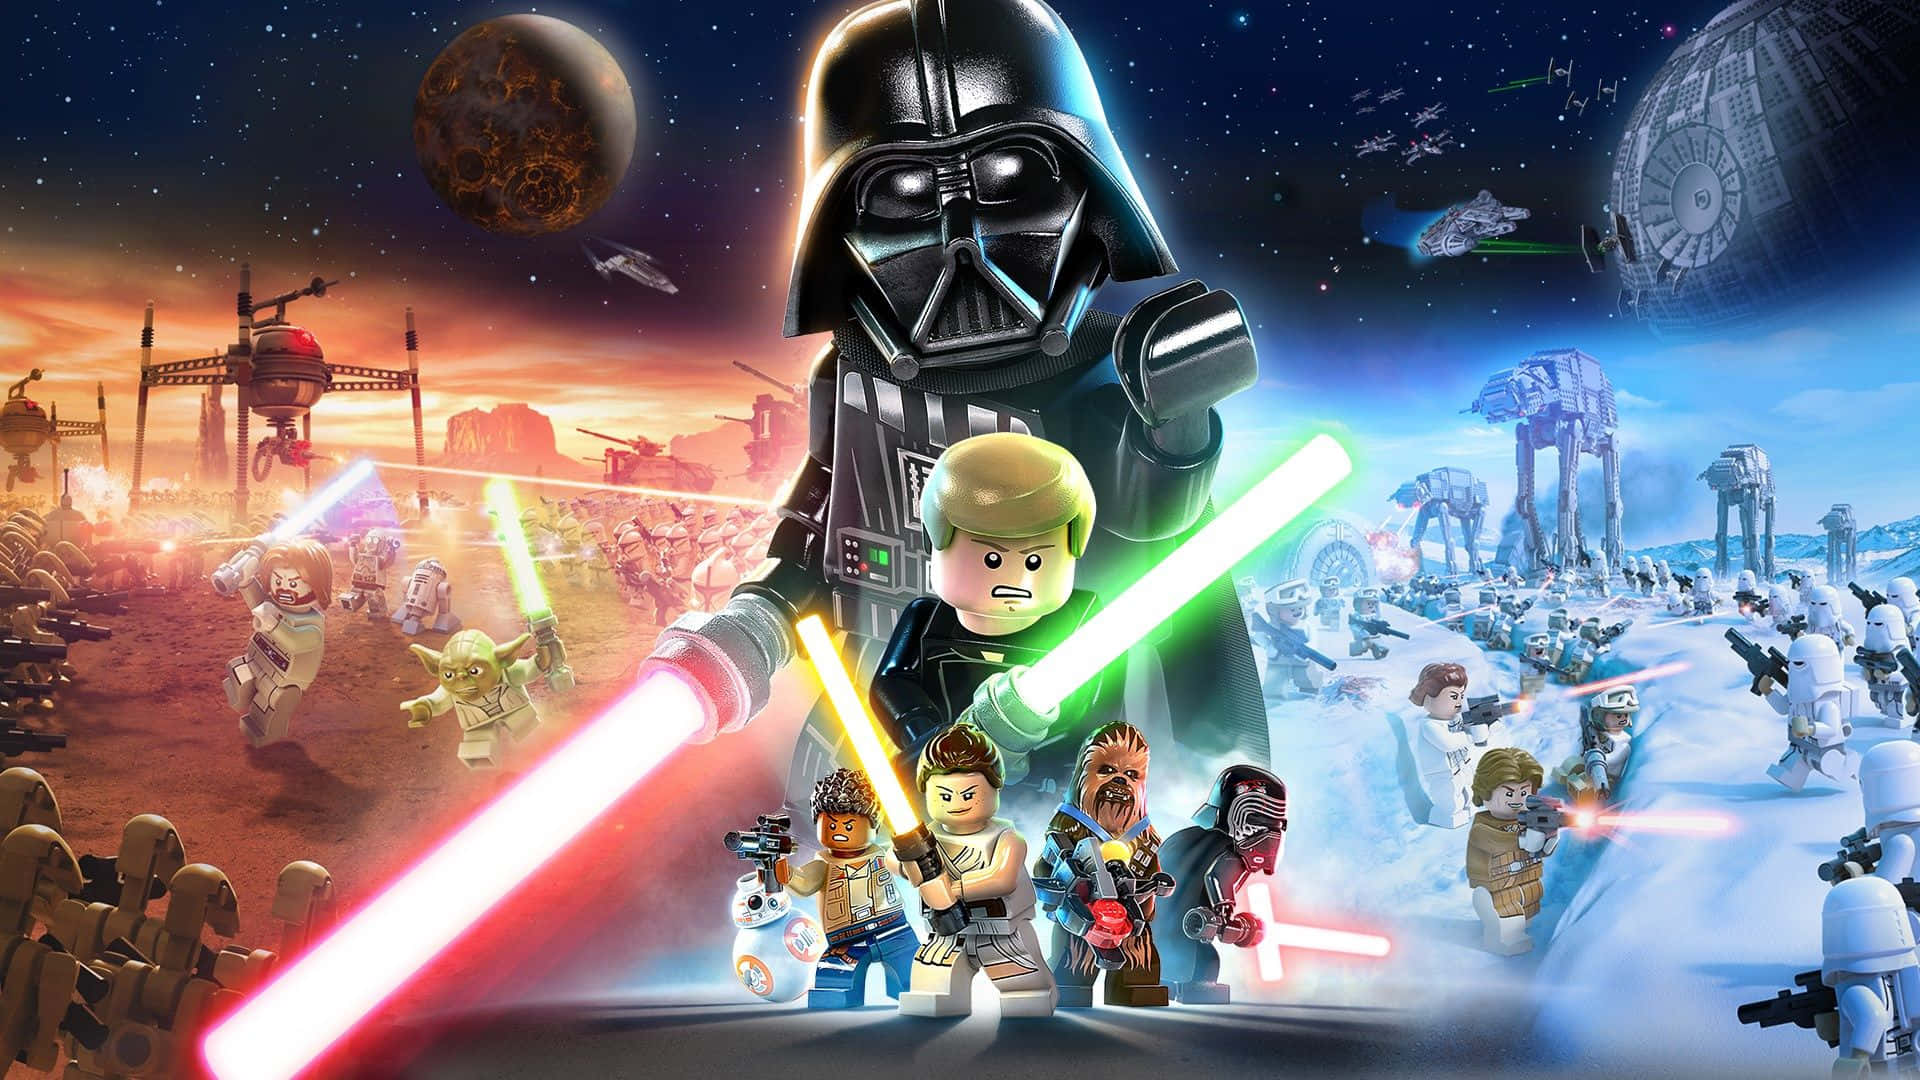 Lego Star Wars là một sáng tạo tuyệt vời, gợi lên phong cách hoài cổ và truyền thống. Với những hình nền Lego Star Wars miễn phí, bạn sẽ được tận hưởng được cảm giác thời thơ ấu với những chiếc xếp hình quen thuộc cùng cảnh quan thần thoại.